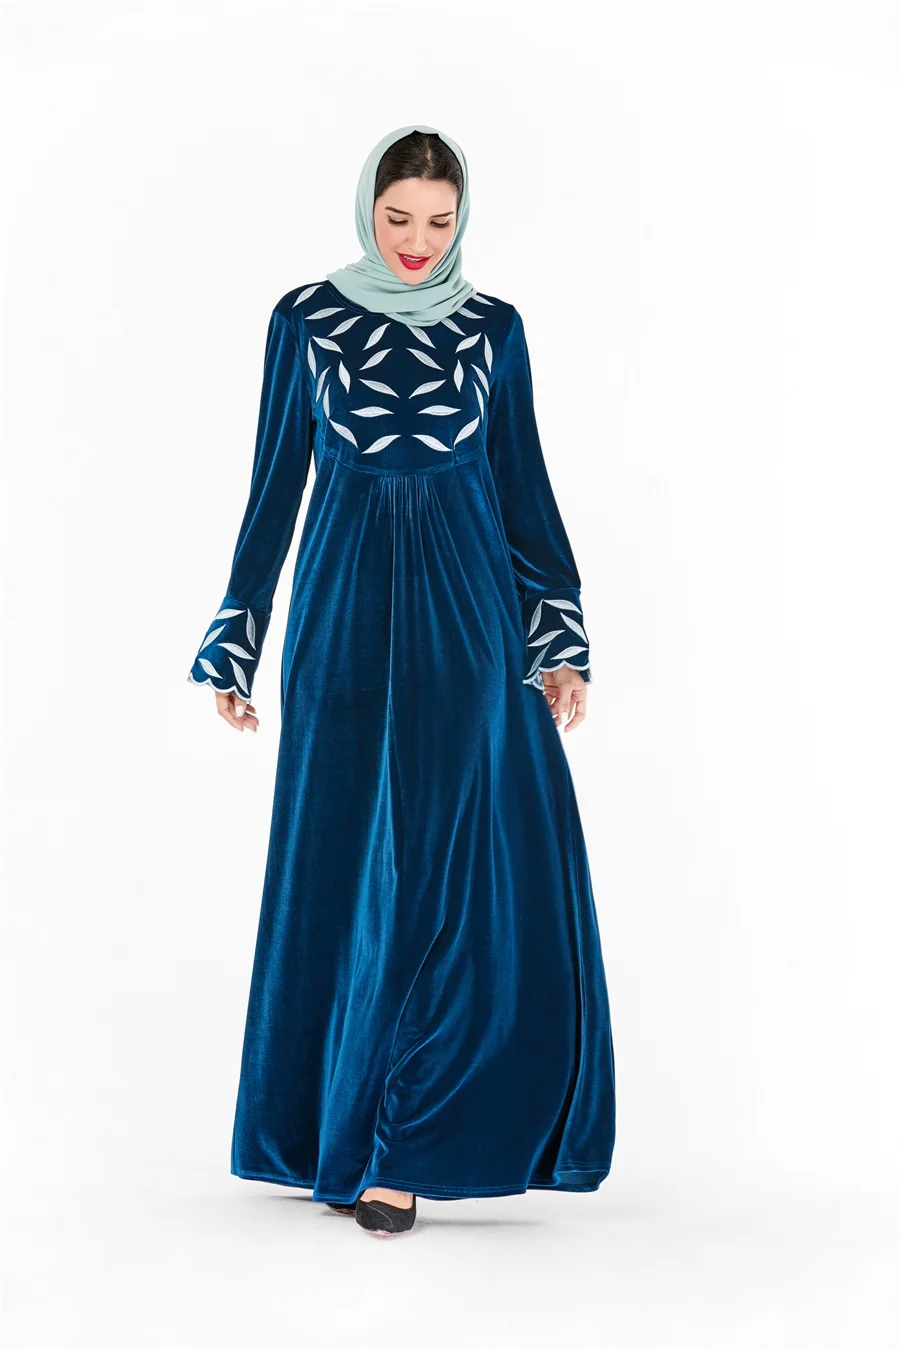 Siskakia вельветовое длинное платье размера плюс с вышивкой в виде листьев, платья макси, элегантные с круглым вырезом и расклешенным длинным рукавом, драпированные зимние платья